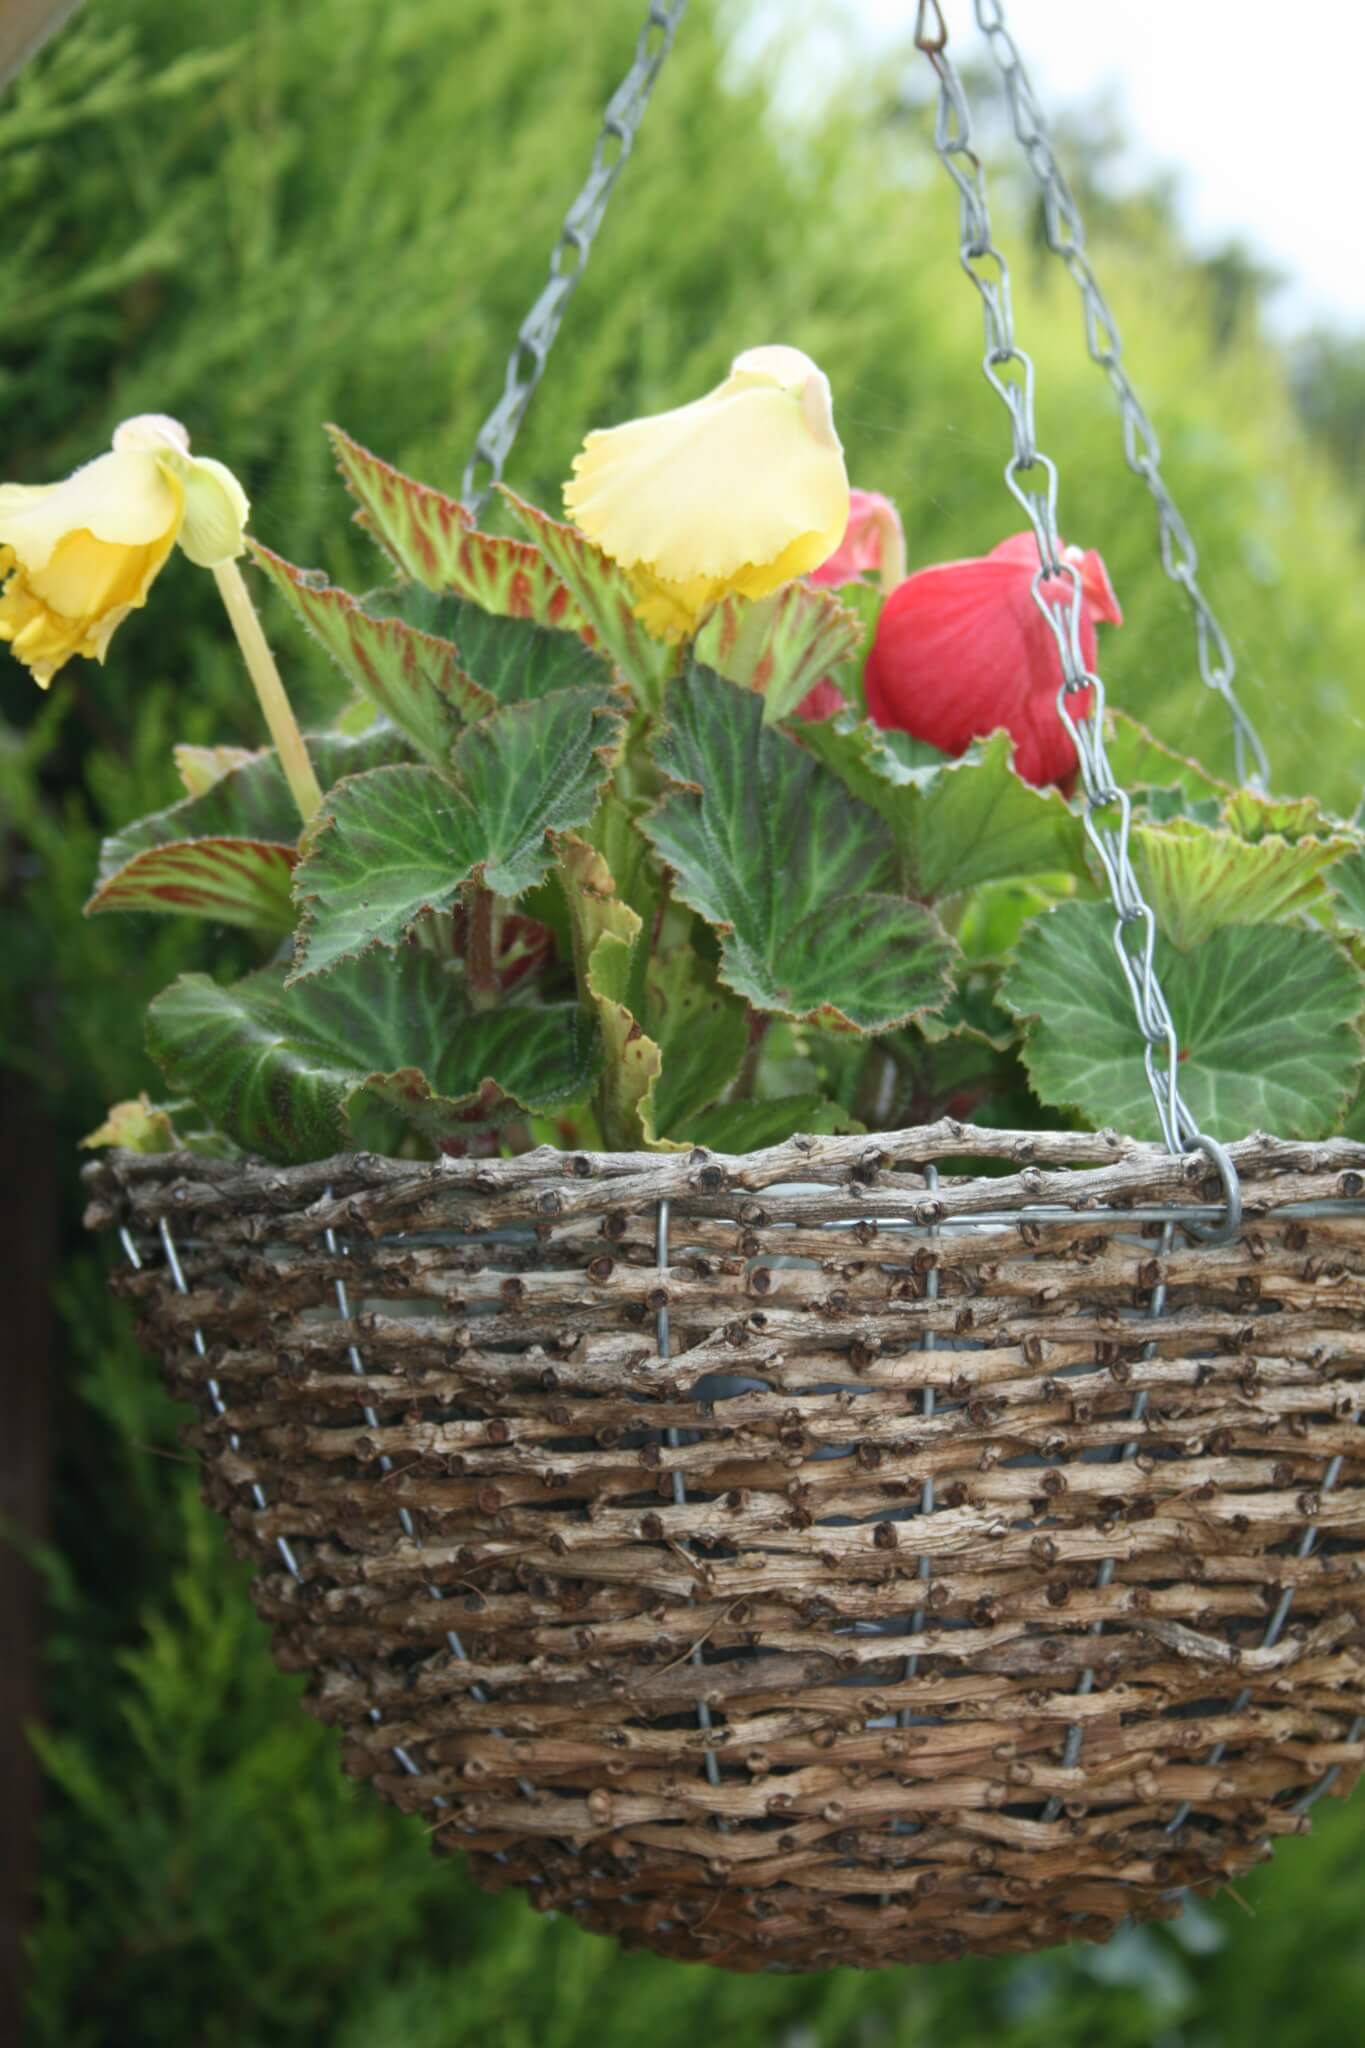 My hanging baskets of begonias